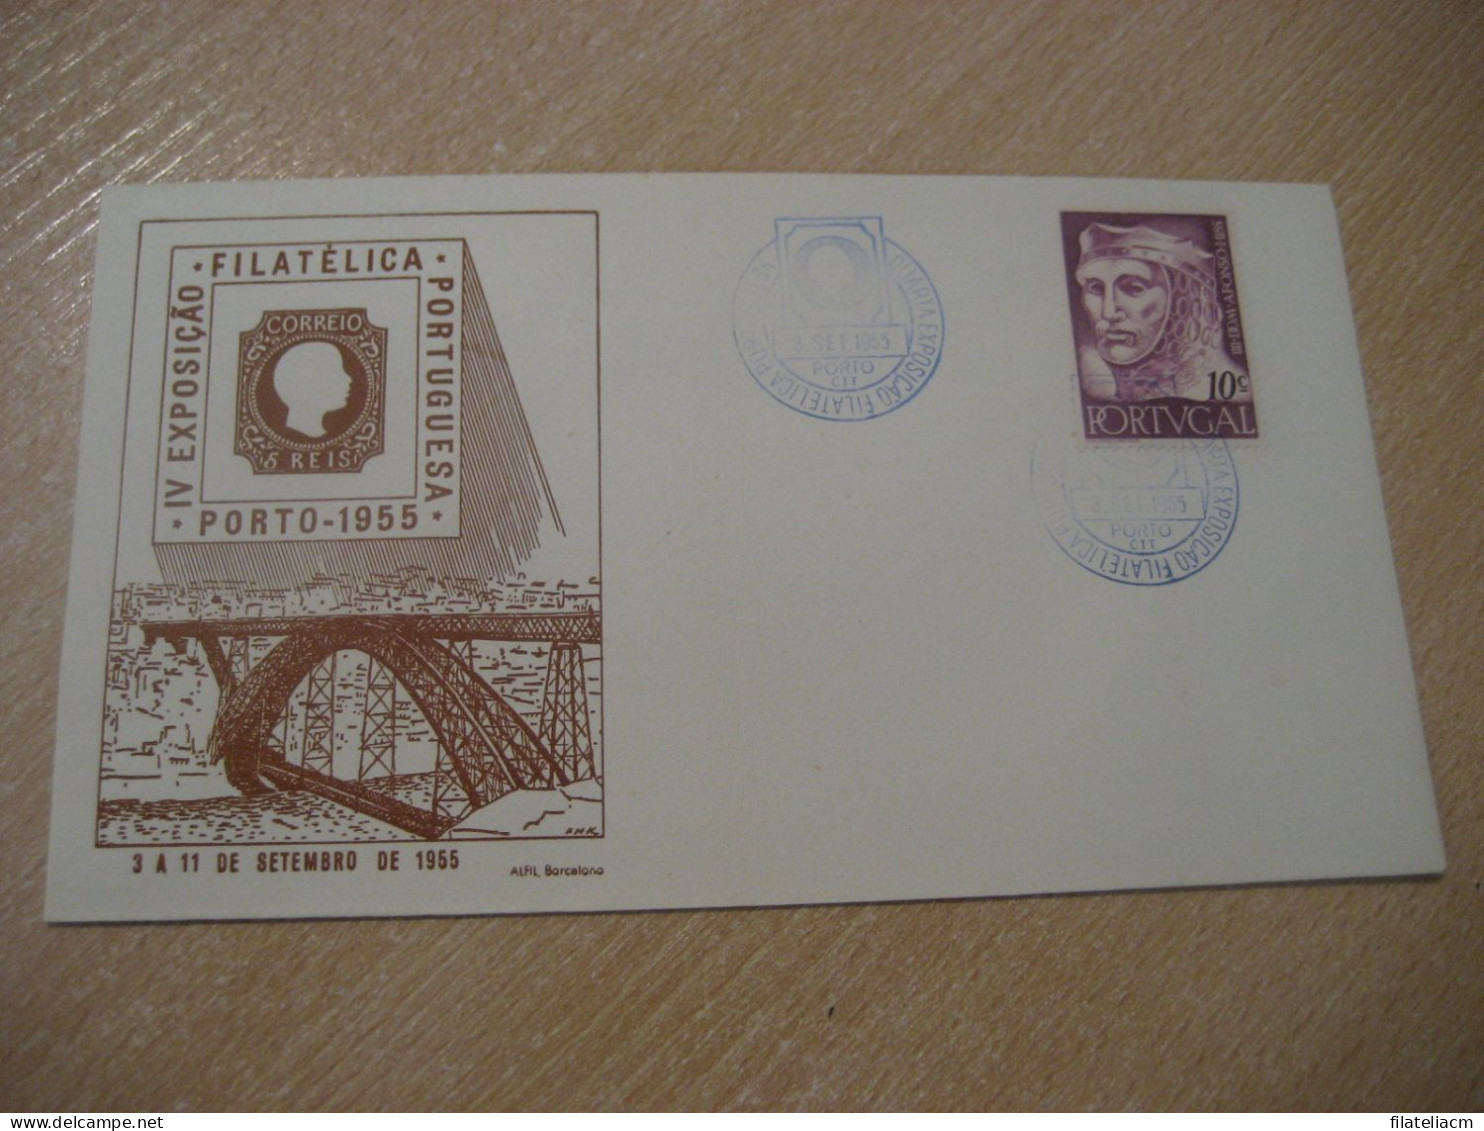 PORTO 1955 Expo Filatelica Stamp Bridge Cancel Cover PORTUGAL - Covers & Documents